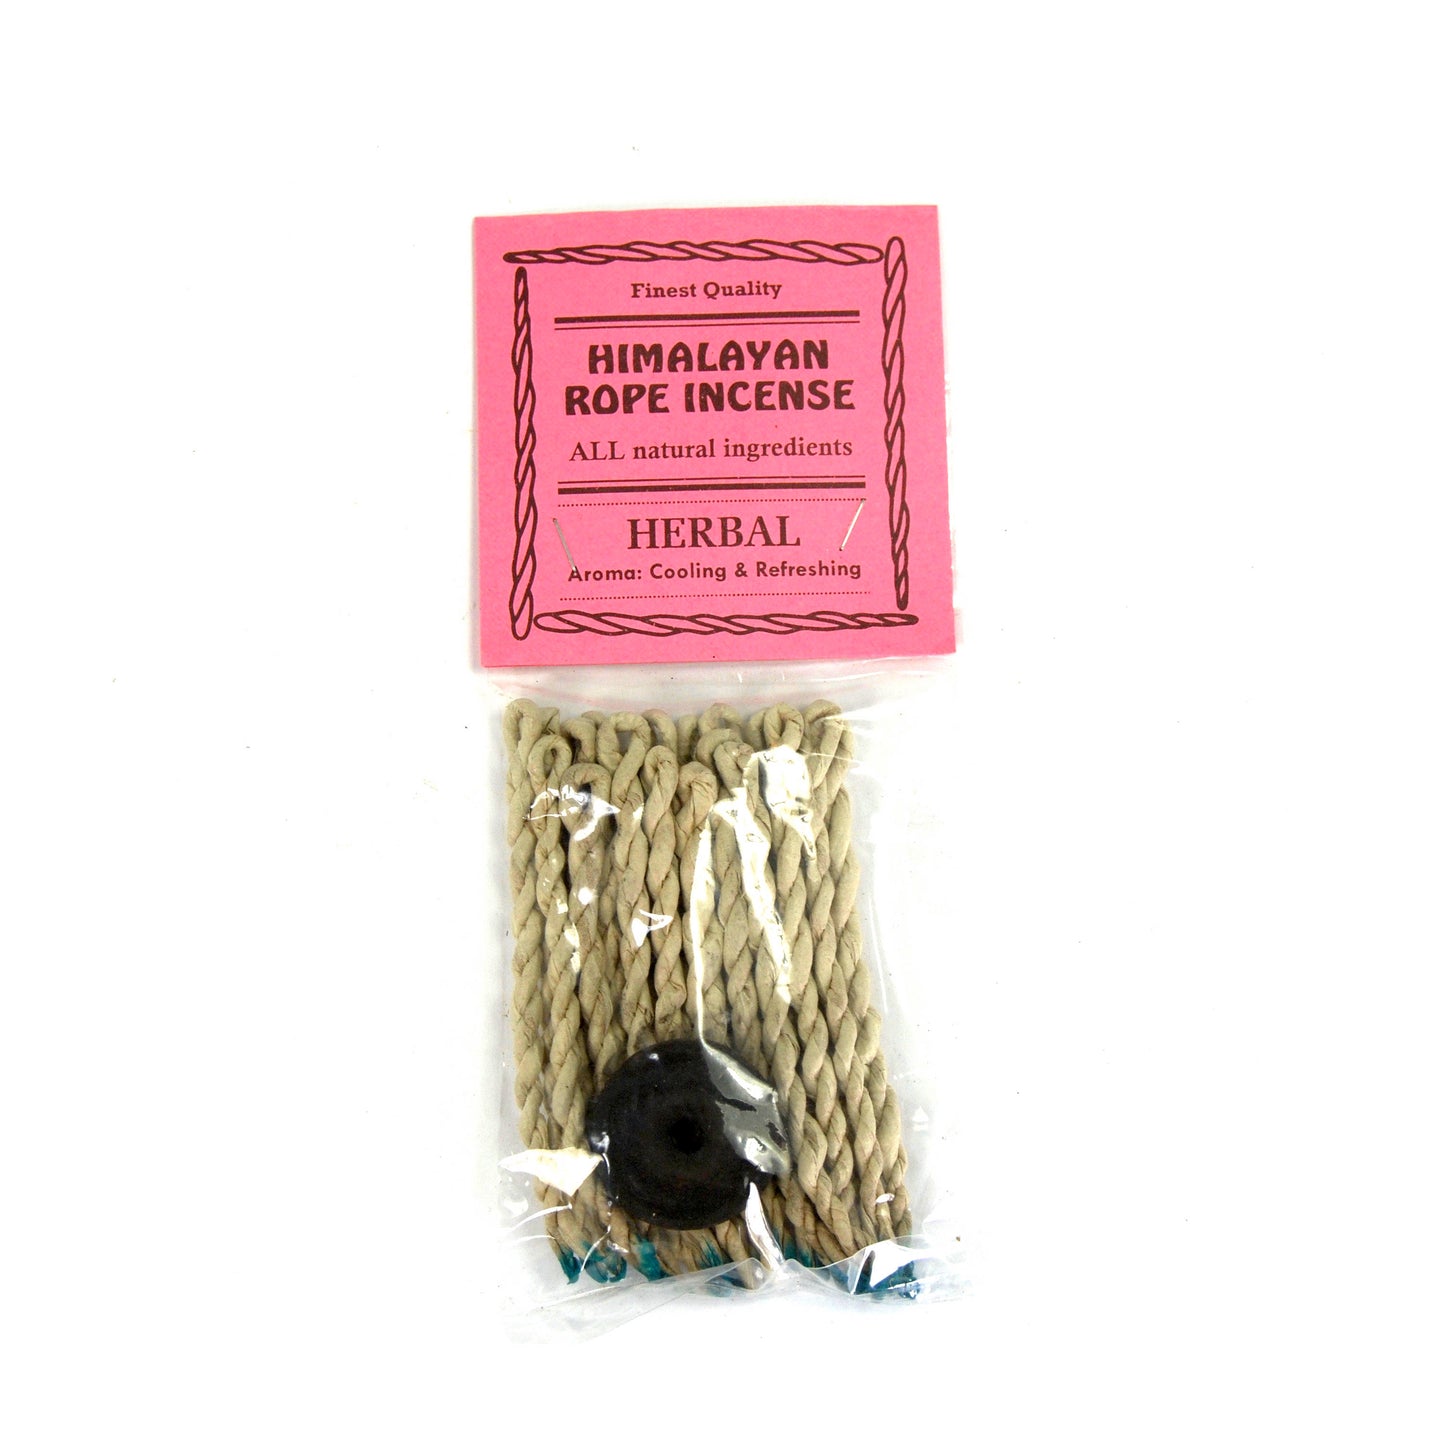 HERBAL Himalayan Rope Incense Herbal All Natural 20 Ropes Bundle with Burner Tibetan